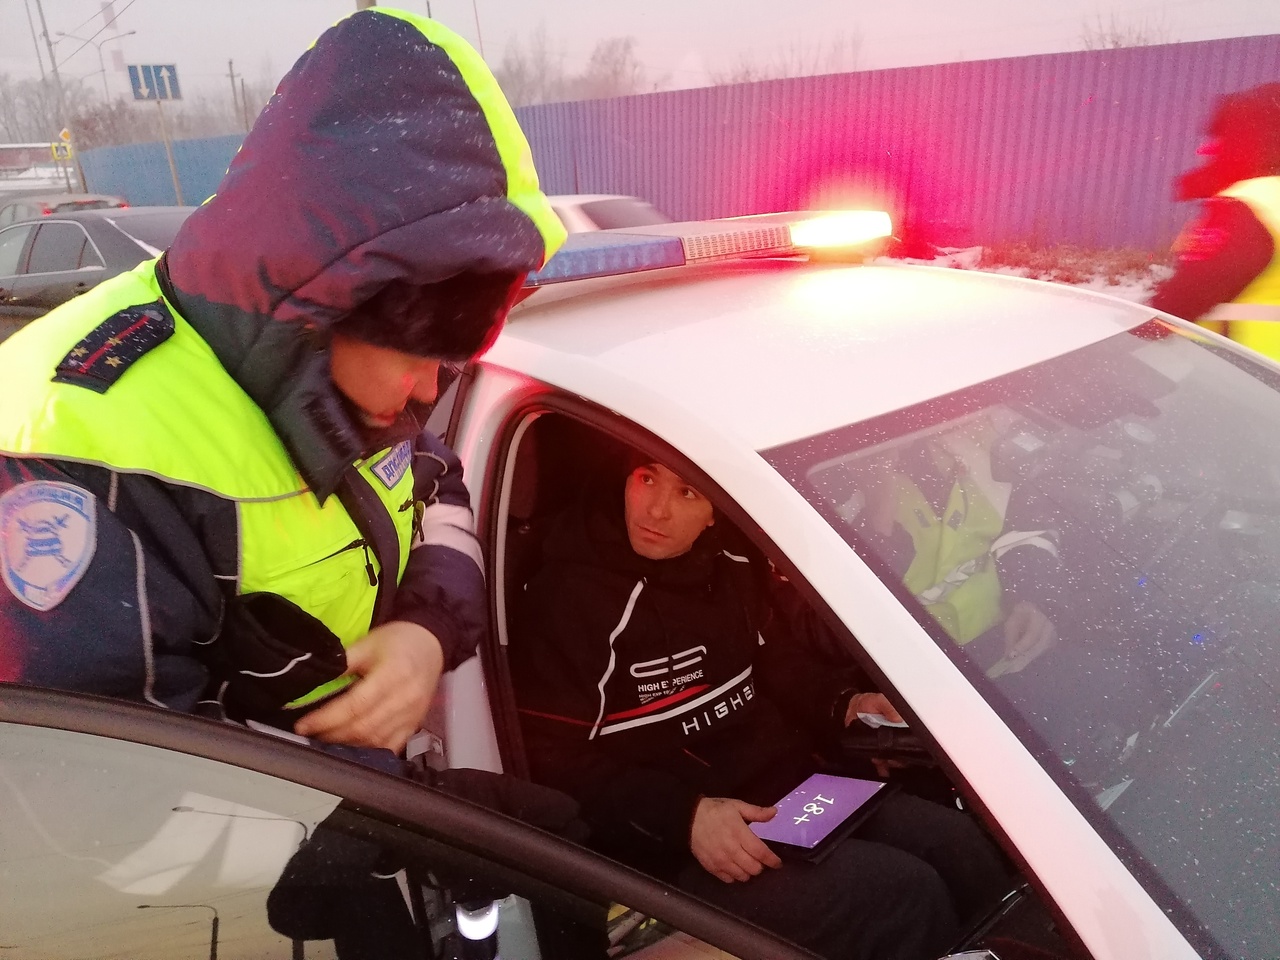 В Кузбассе инспекторы ГИБДД показывали водителям шокирующие кадры аварий